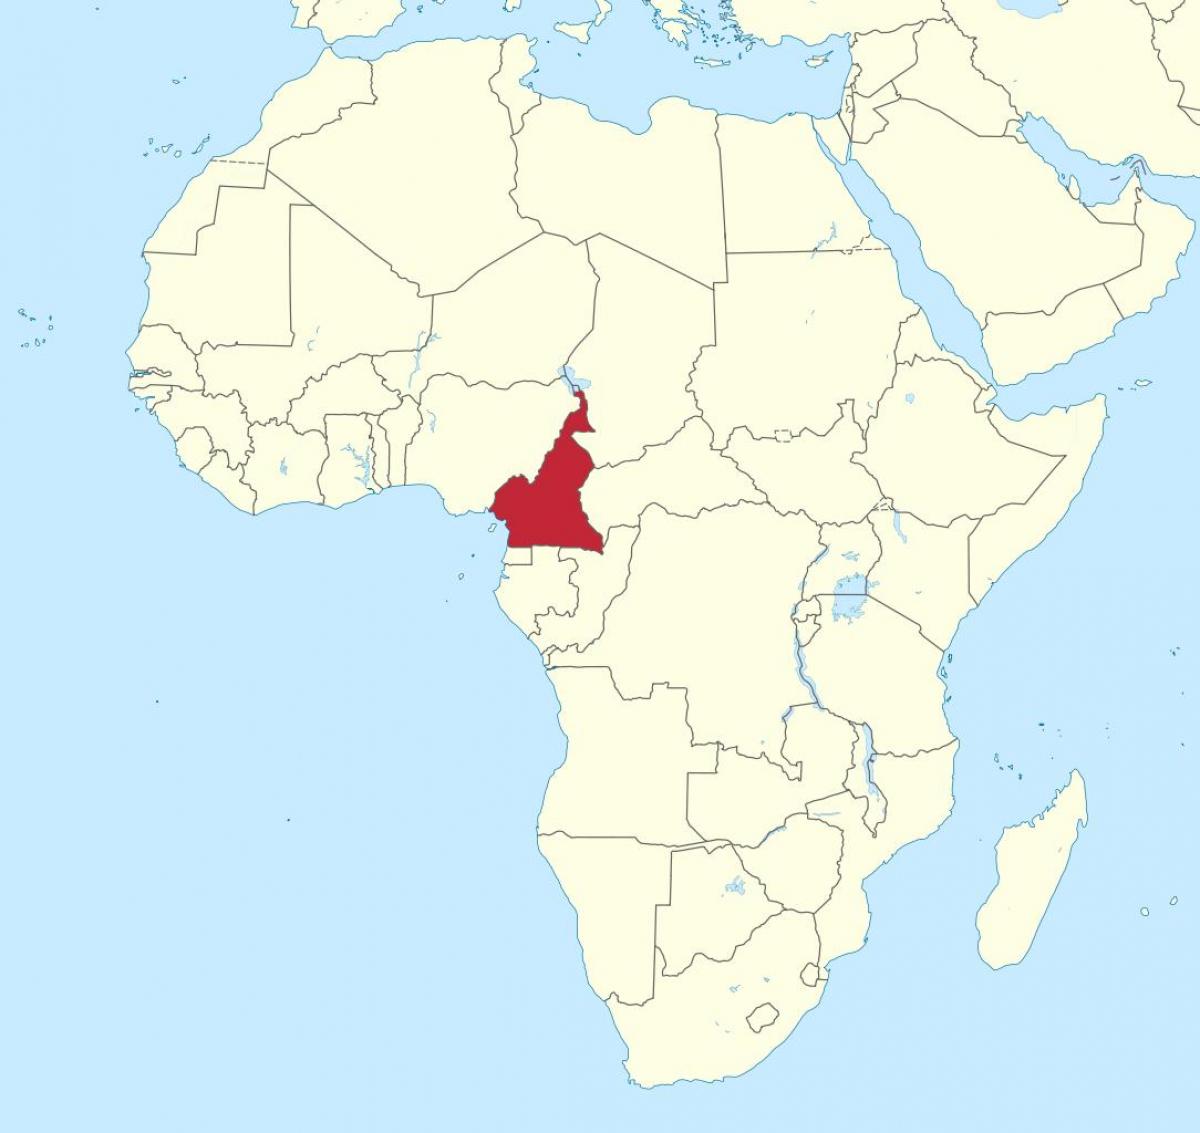 Mapa z Kamerunu, západní afrika